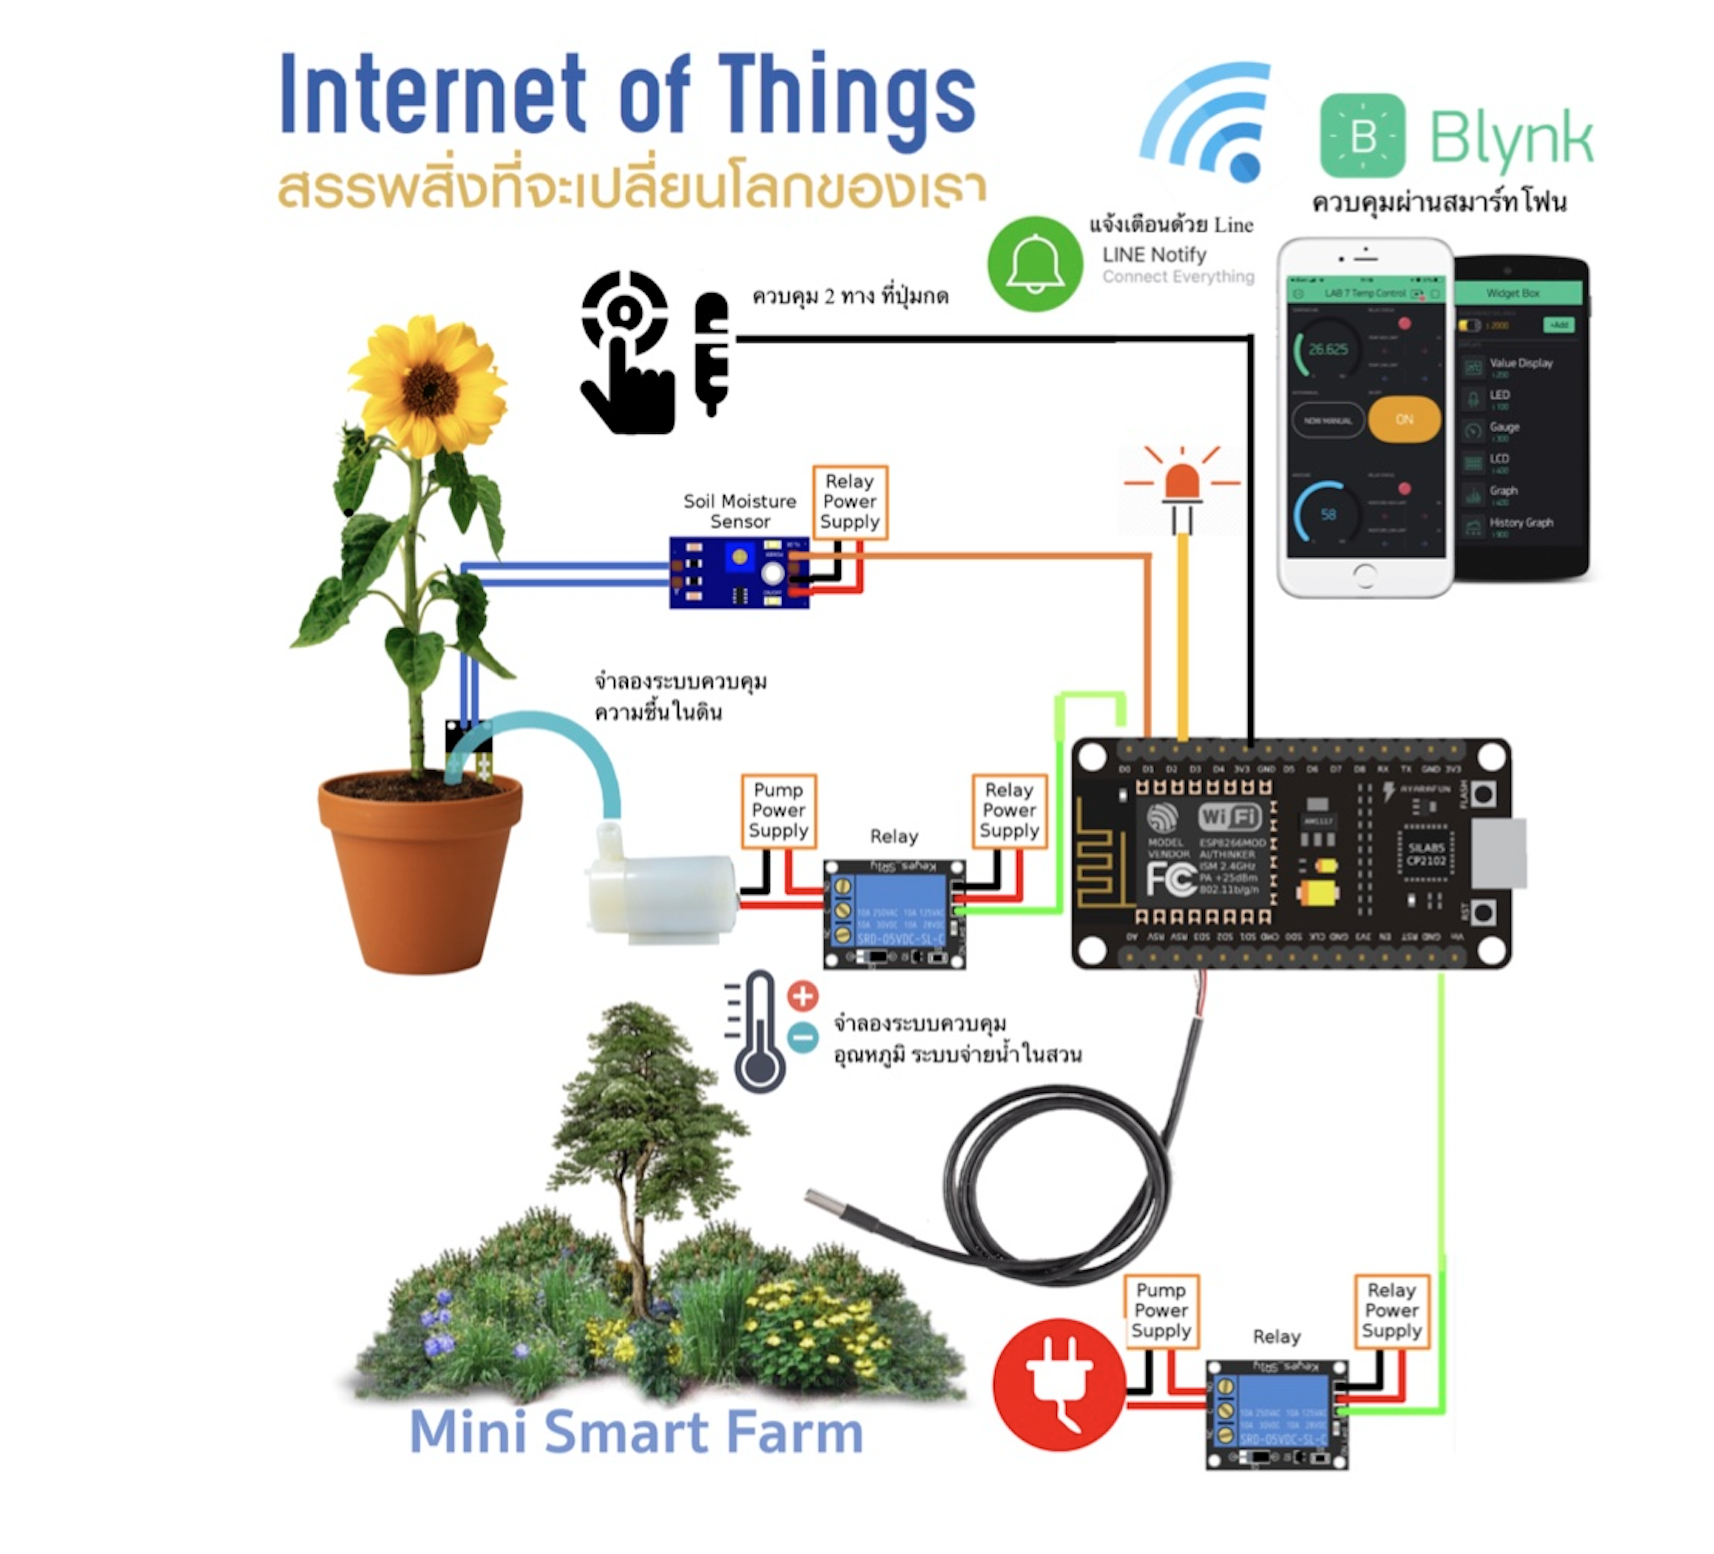 ชุดคิต Arduino Internet of Thing 8 LAB (IOT) ควบคุมผ่านมือถือ พร้อมไฟลต์คู่มืออย่างละเอียด เพื่อการศึกษาด้วยตัวเอง